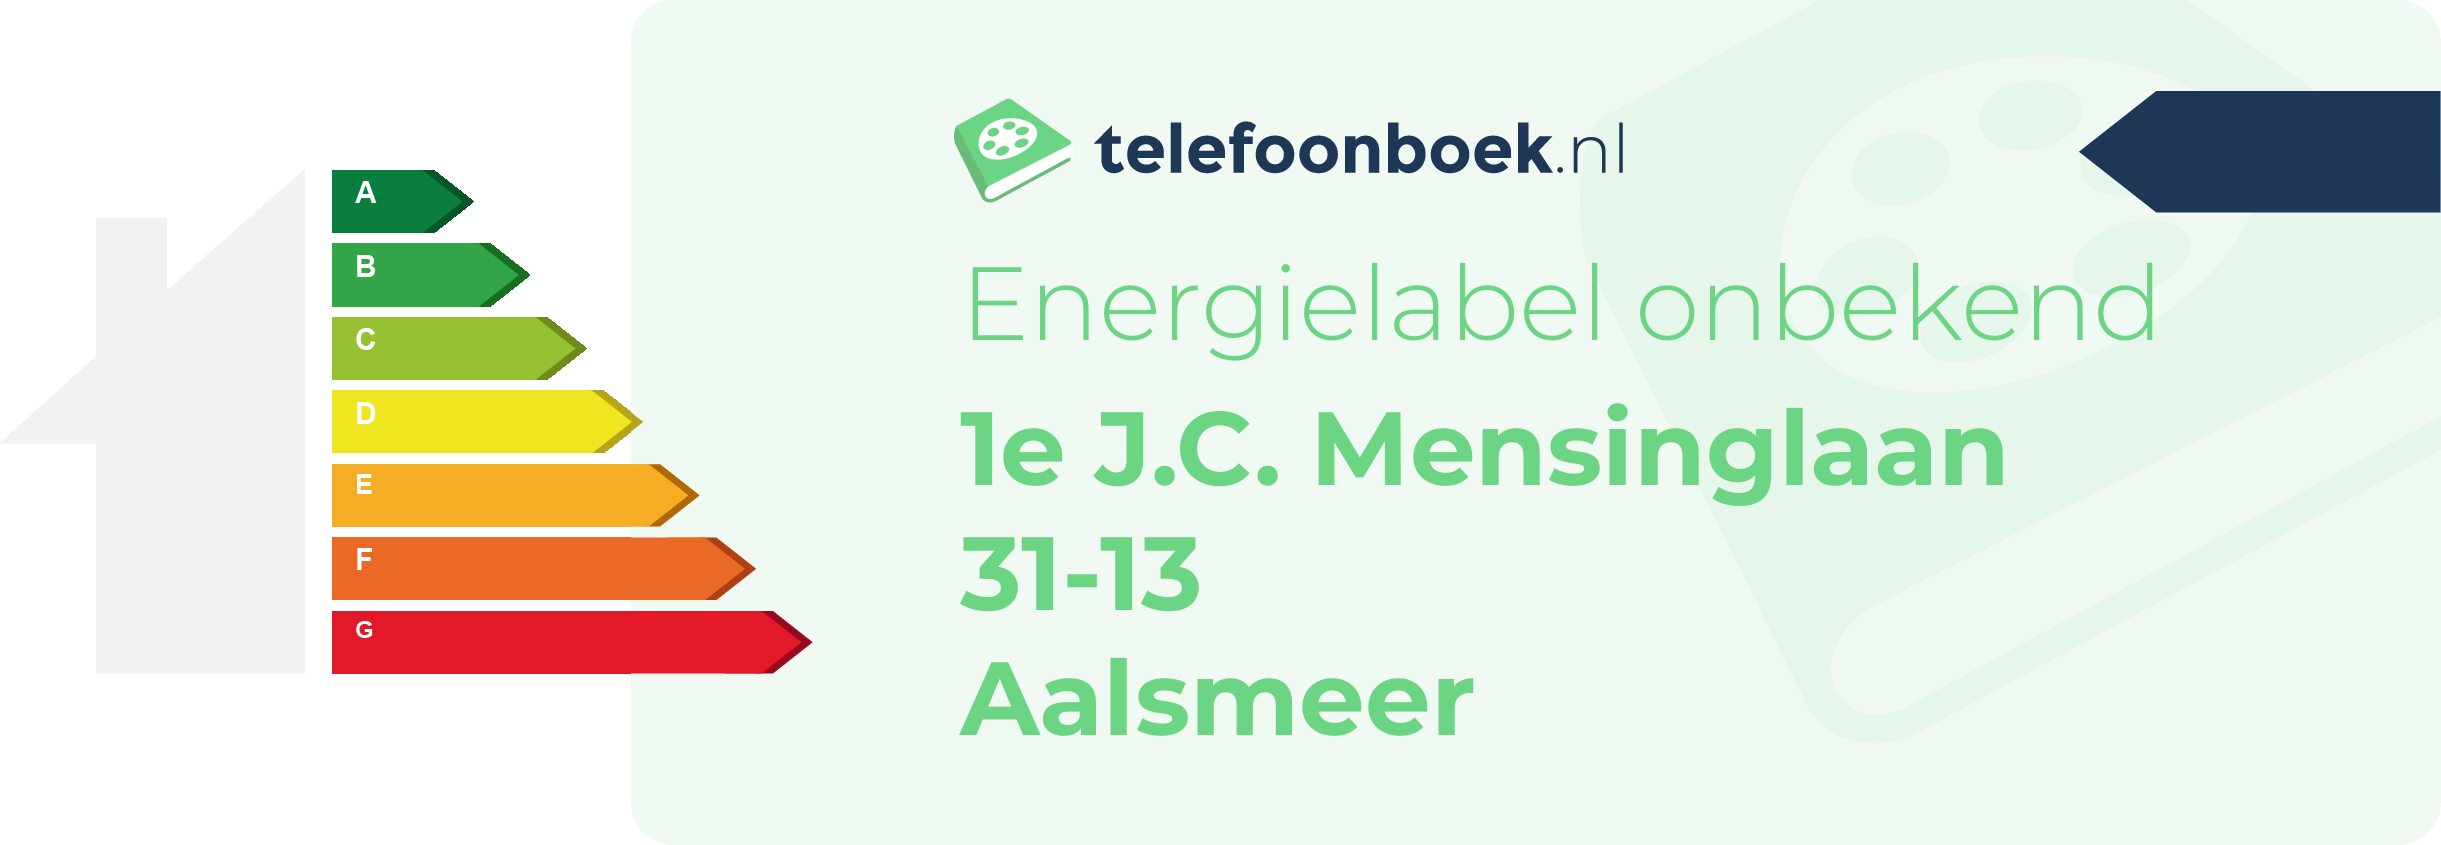 Energielabel 1e J.C. Mensinglaan 31-13 Aalsmeer